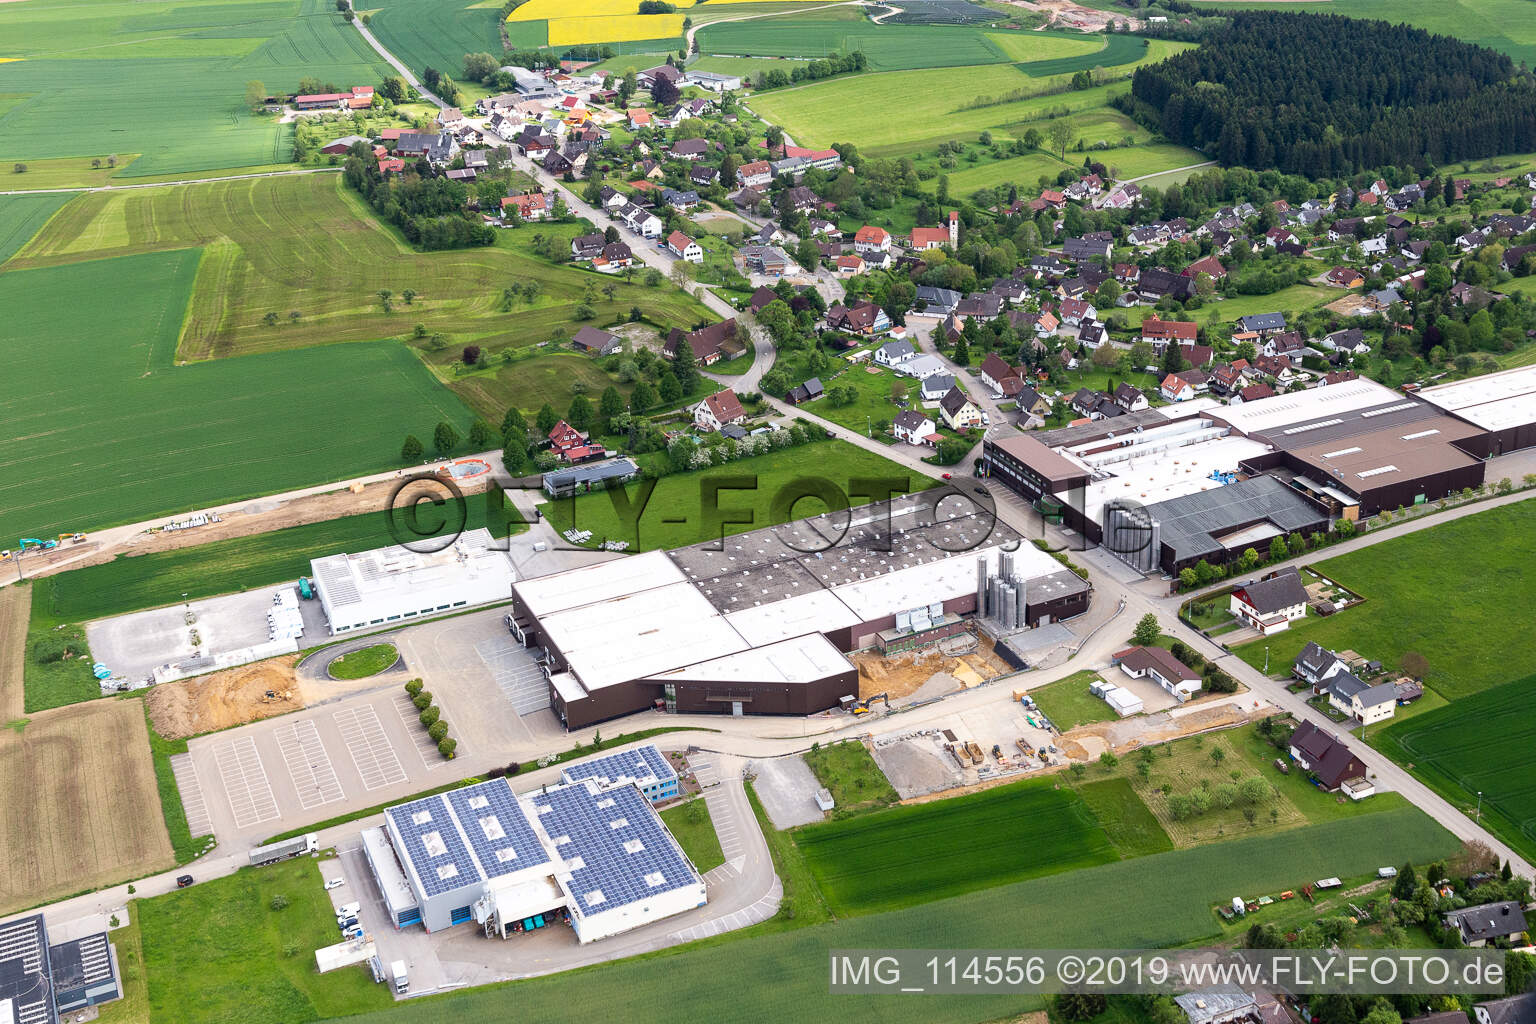 Luftbild von GFV Verschlusstechnik GmbH in Alpirsbach im Bundesland Baden-Württemberg, Deutschland